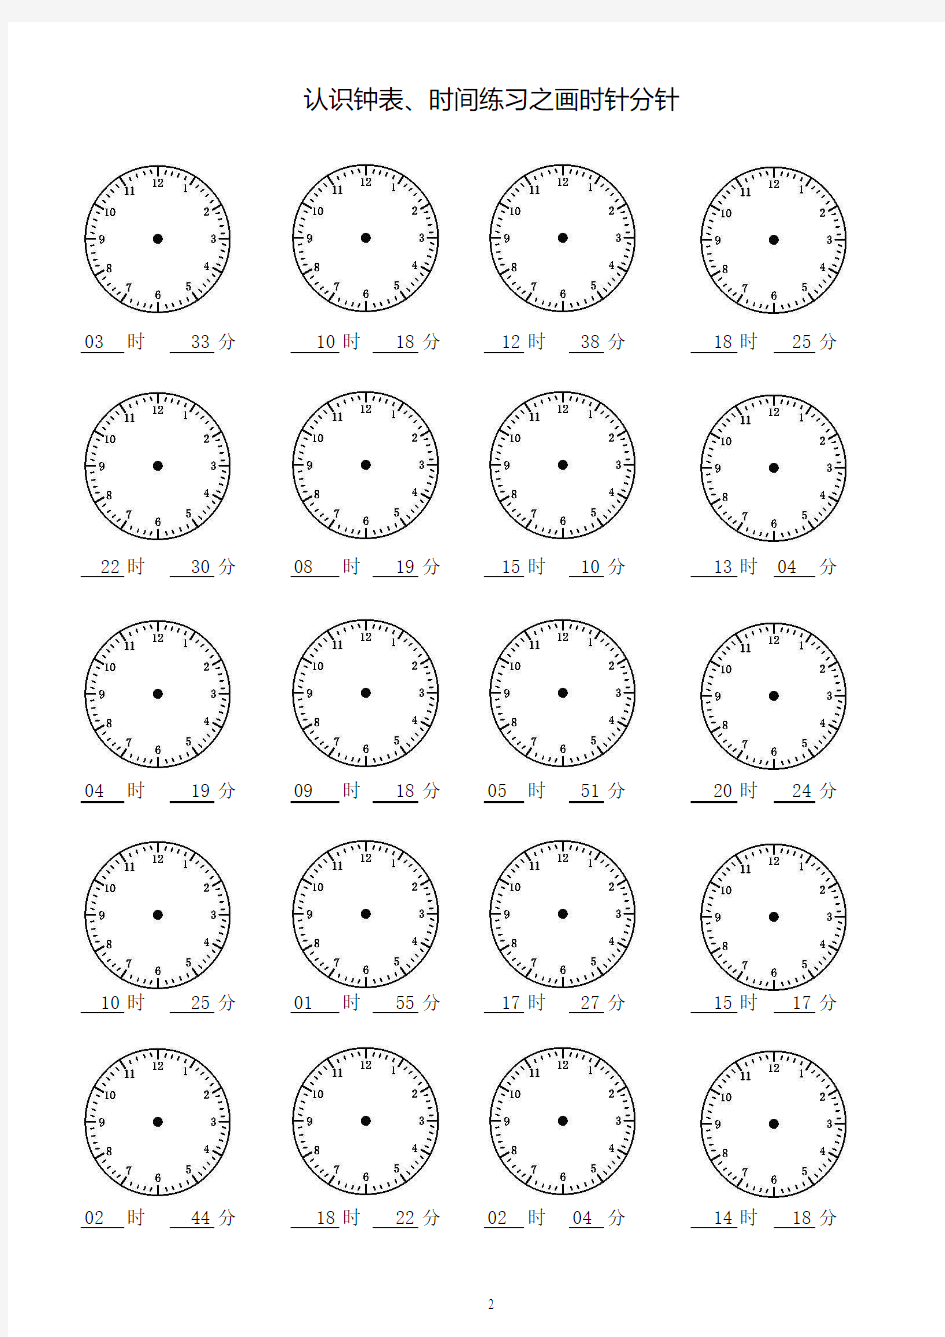 二年级认识钟表时间练习之画时针分针共60页1200题每页20道